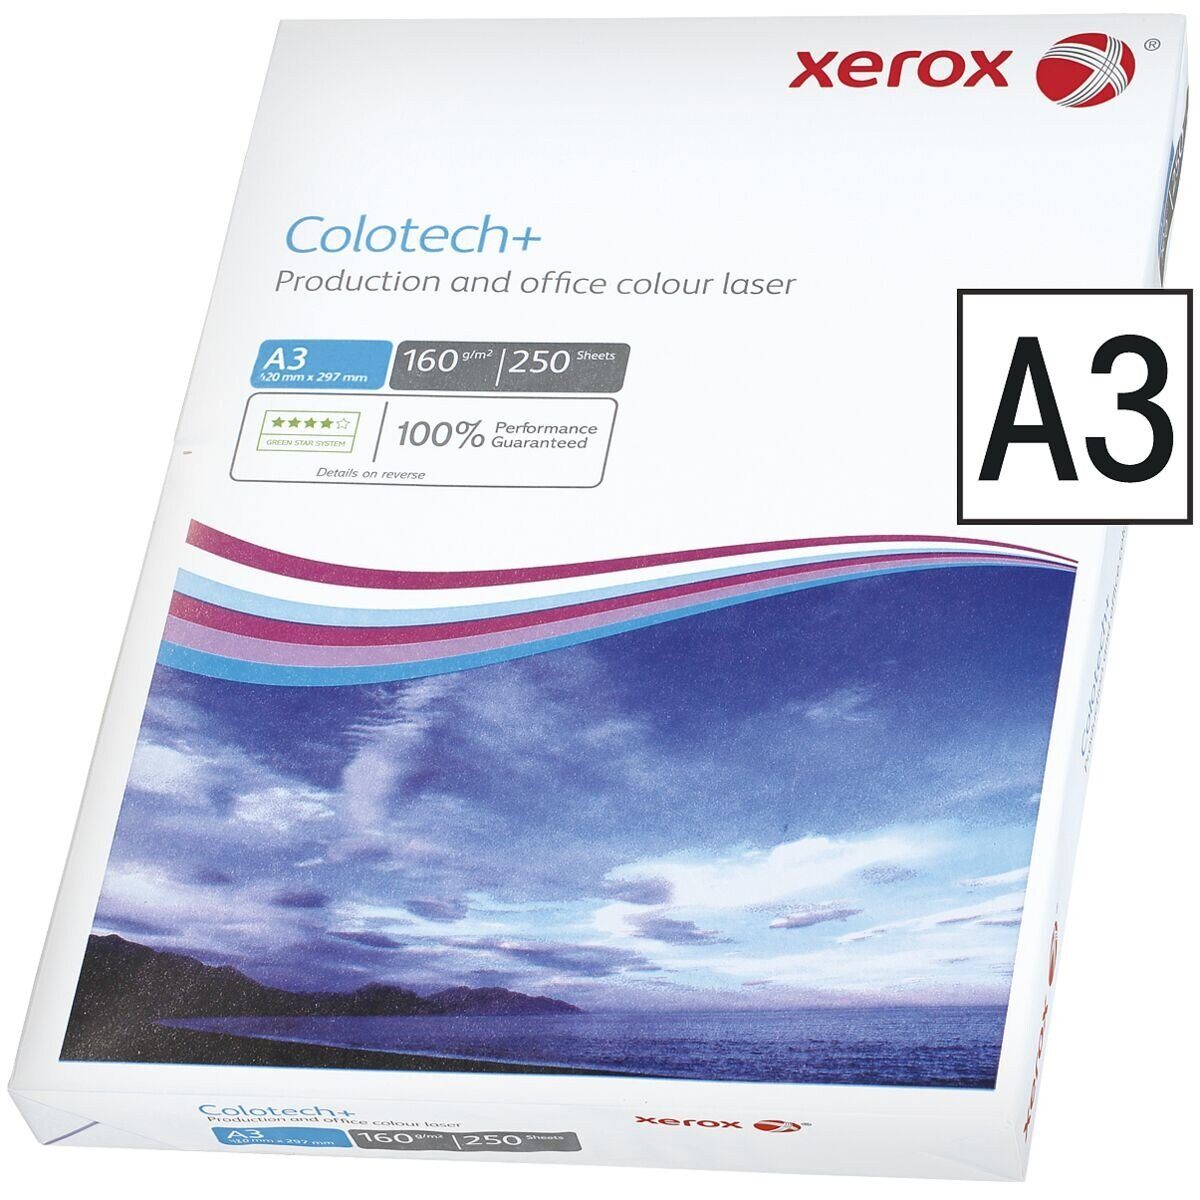 g/m², Farblaser-Druckerpapier Colotech+, Blatt DIN 250 Format 160 A3, Xerox